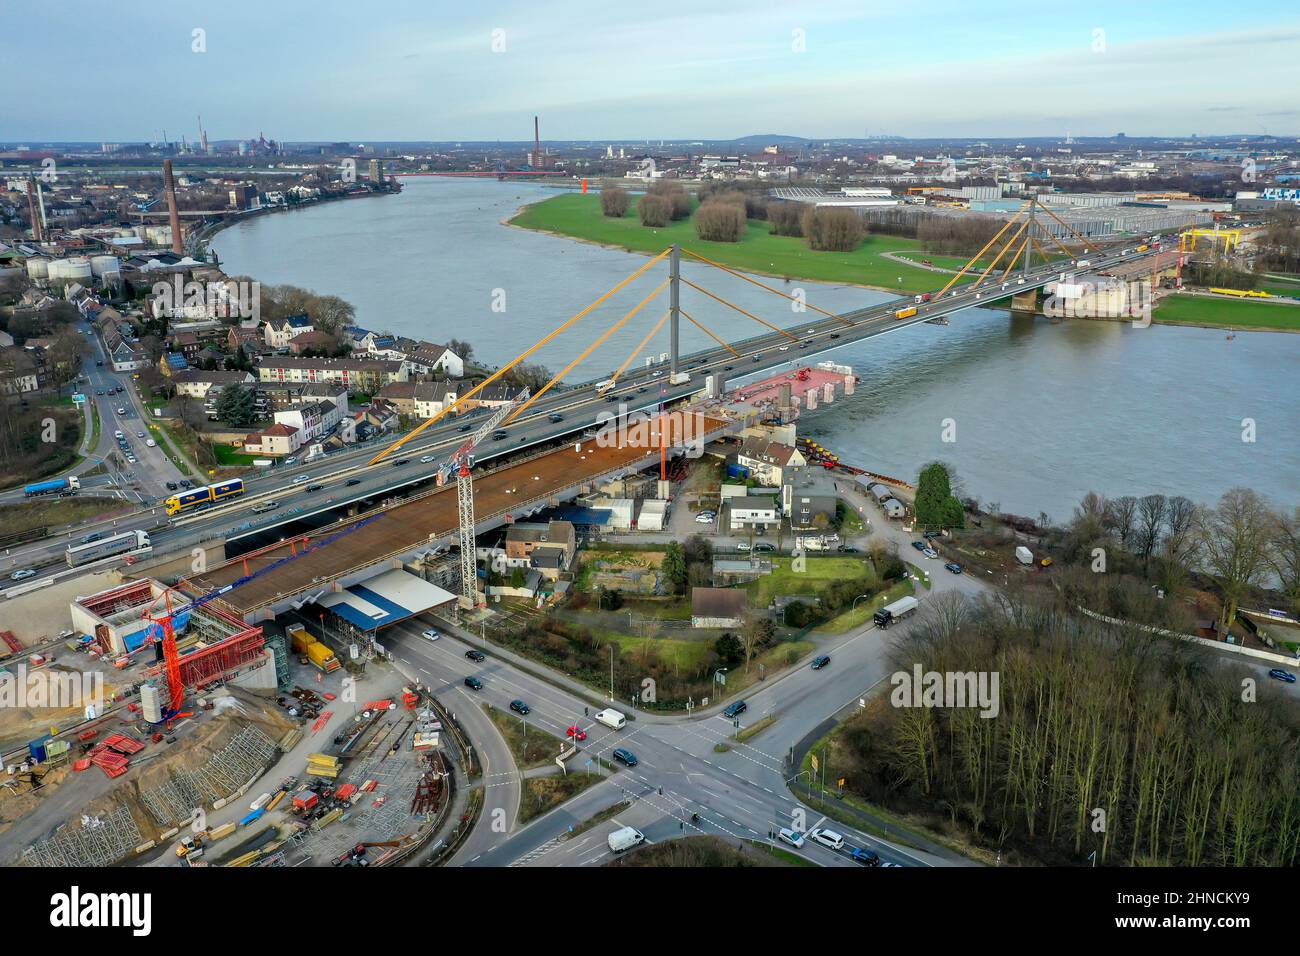 Duisburg, Renania settentrionale-Vestfalia, Germania - Nuova costruzione del ponte sul Reno del A40 Neuenkamp. Il ponte della superstrada sul Reno a Duisburg tra Foto Stock